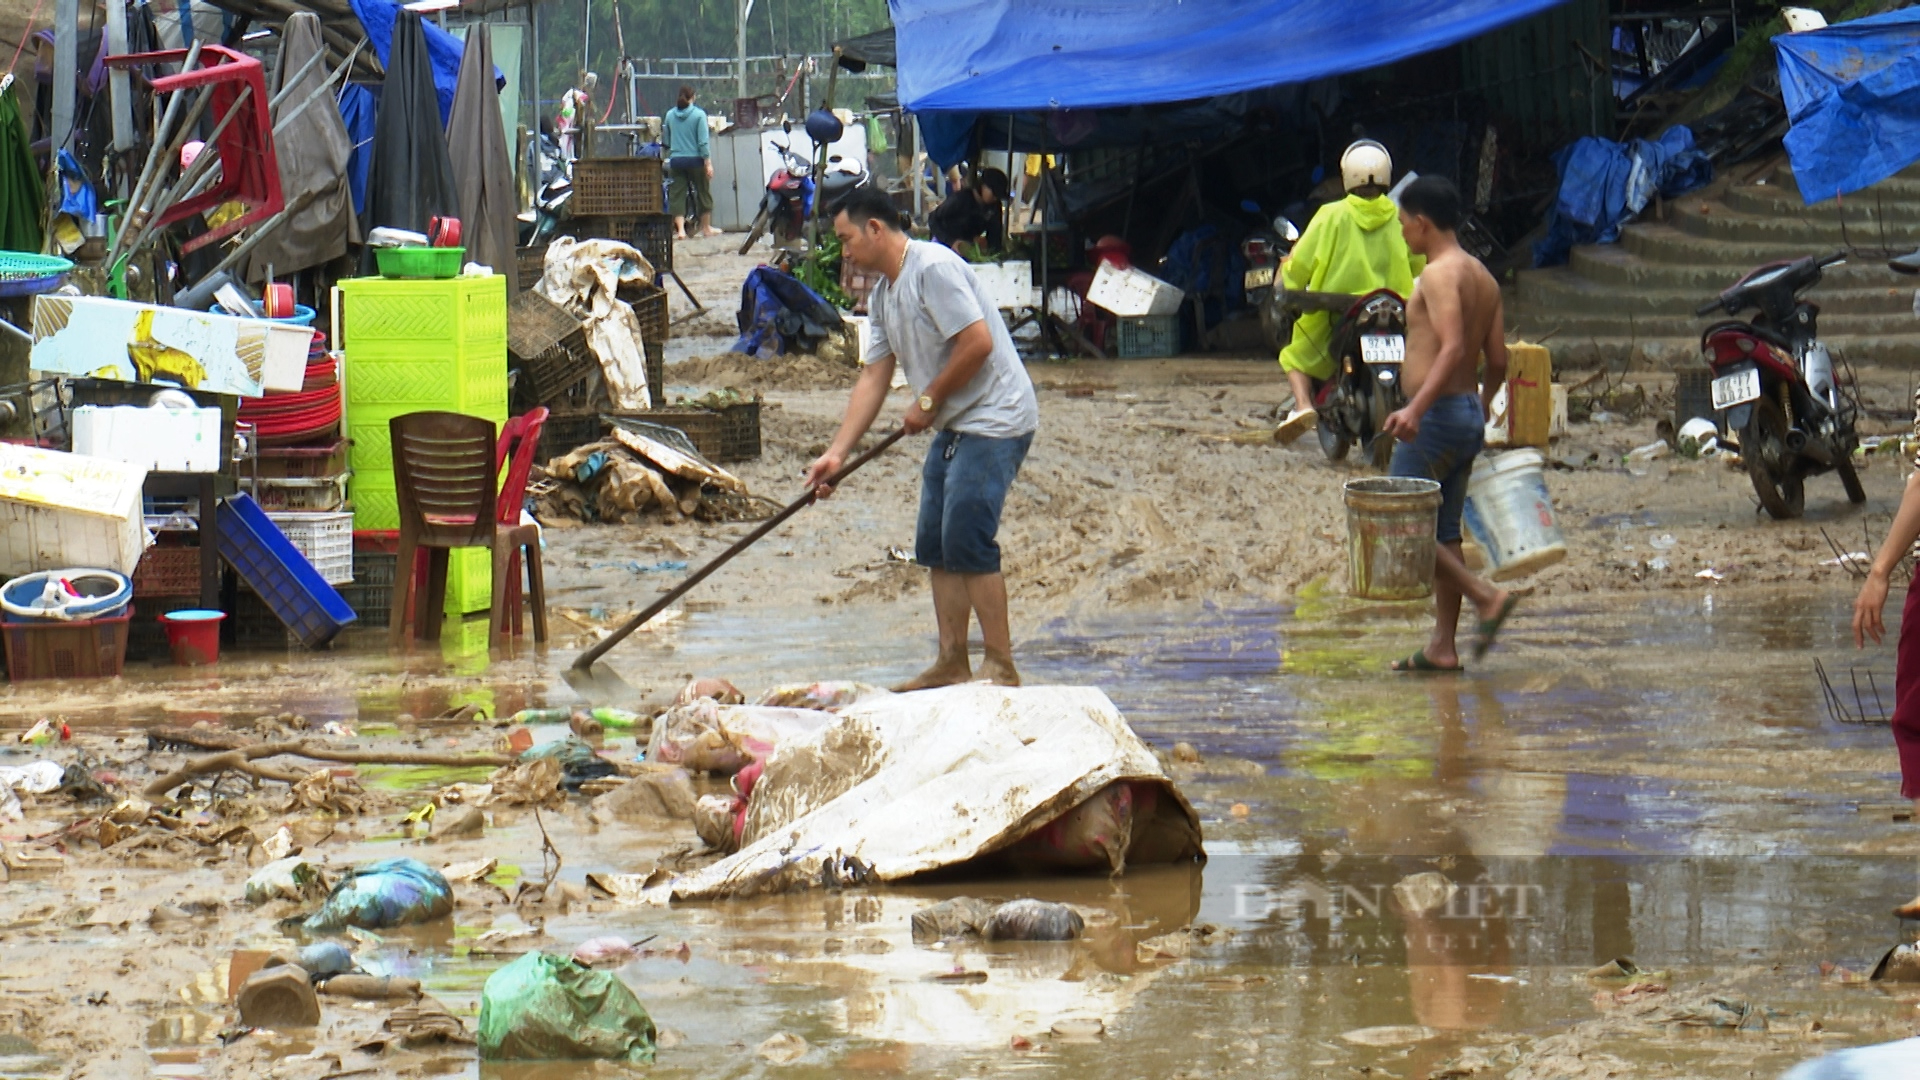 Sau lũ lụt lớn làm 3 chết và mất tích, Chủ tịch Quảng Nam đã chỉ đạo nóng - Ảnh 3.